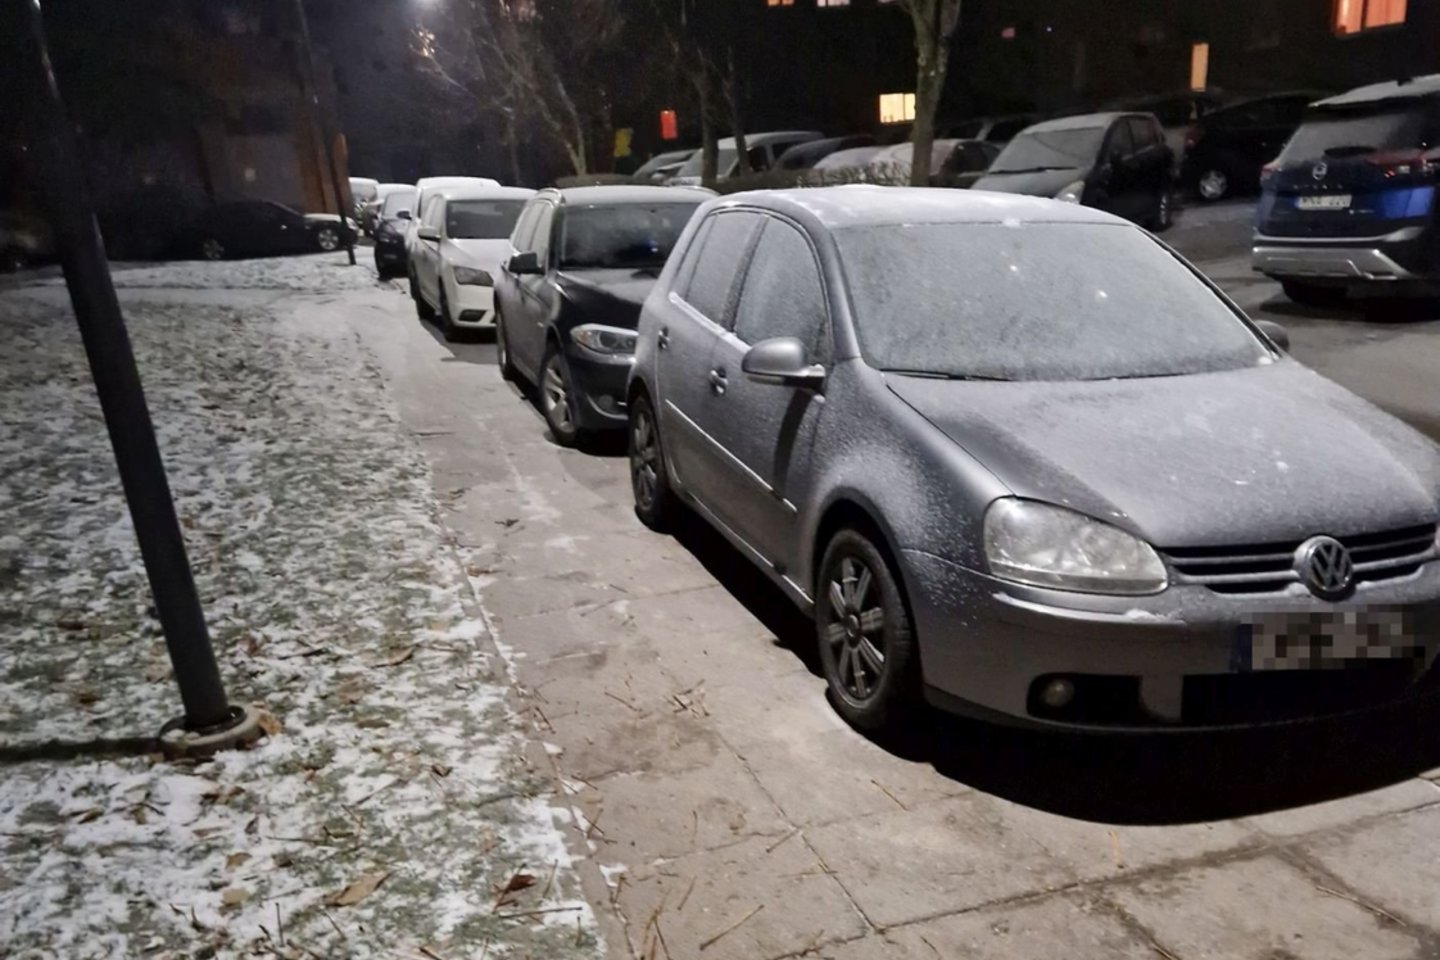 Eigulių mikrorajono gyventojams galvos sopuliu yra tapęs automobilių stovėjimo vietų trūkumas.<br>„Kas vyksta Kaune“ skaitytojo nuotr.